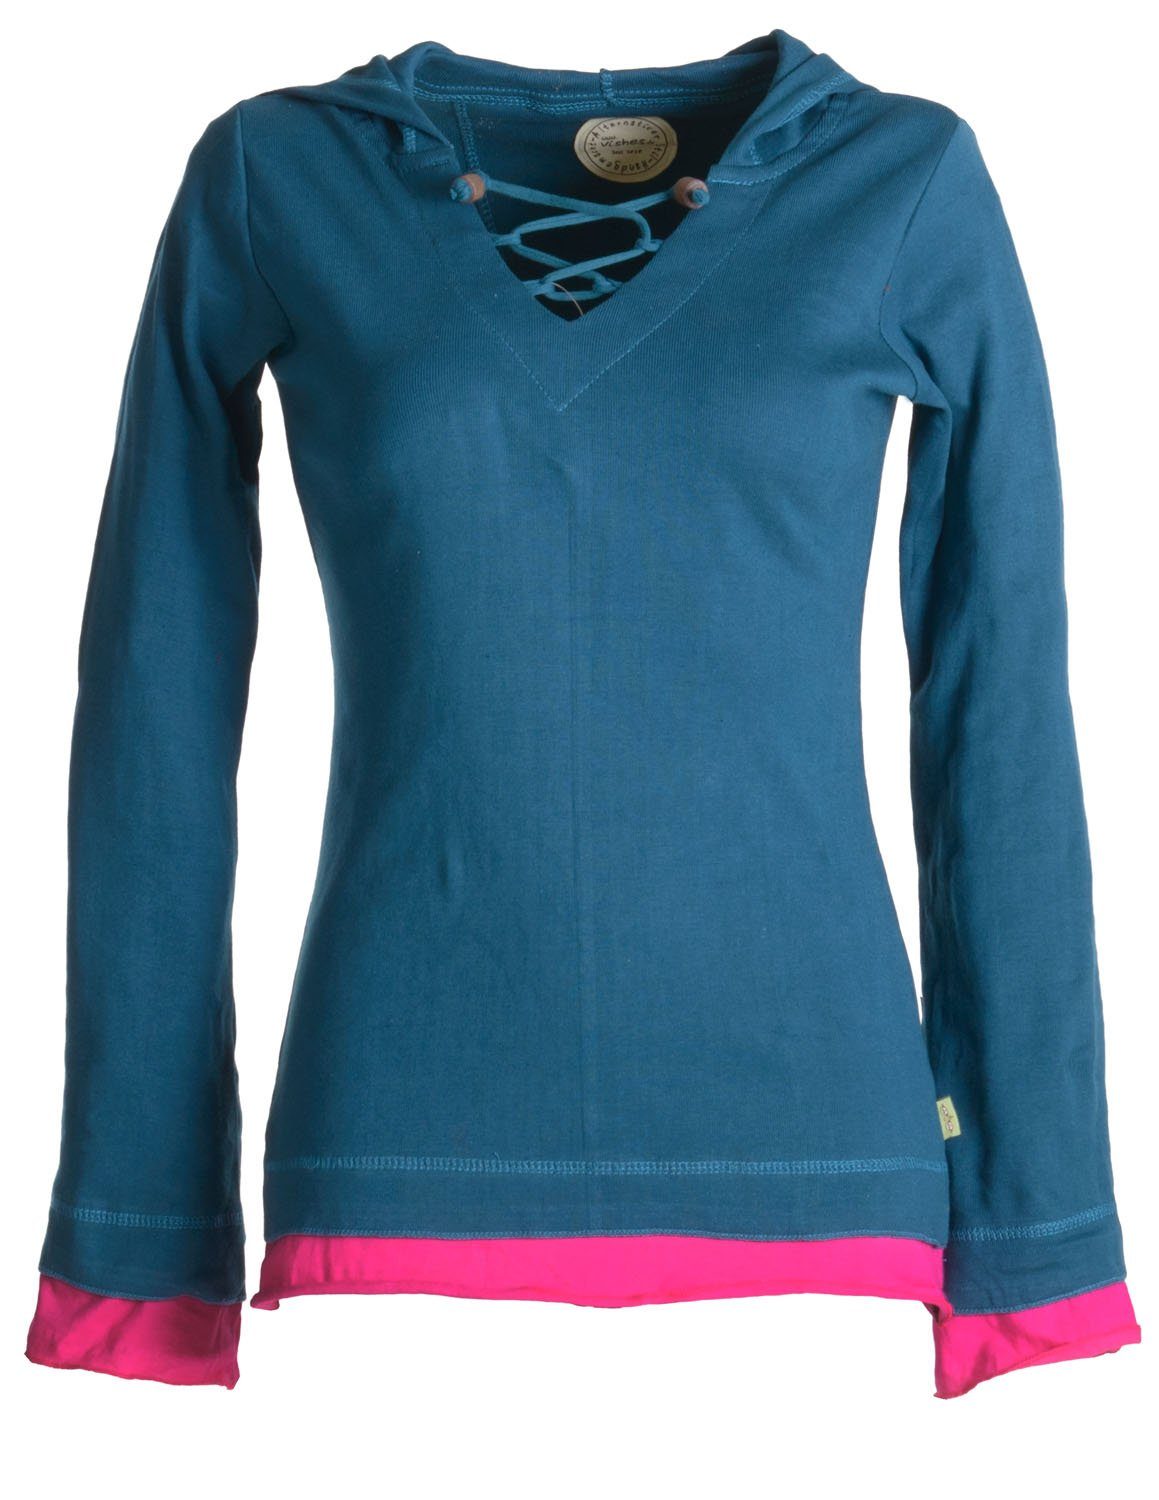 Vishes Zipfelshirt Lagenlook Longsleeve Shirt mit Zipfelkapuze Hoodie, Sweater